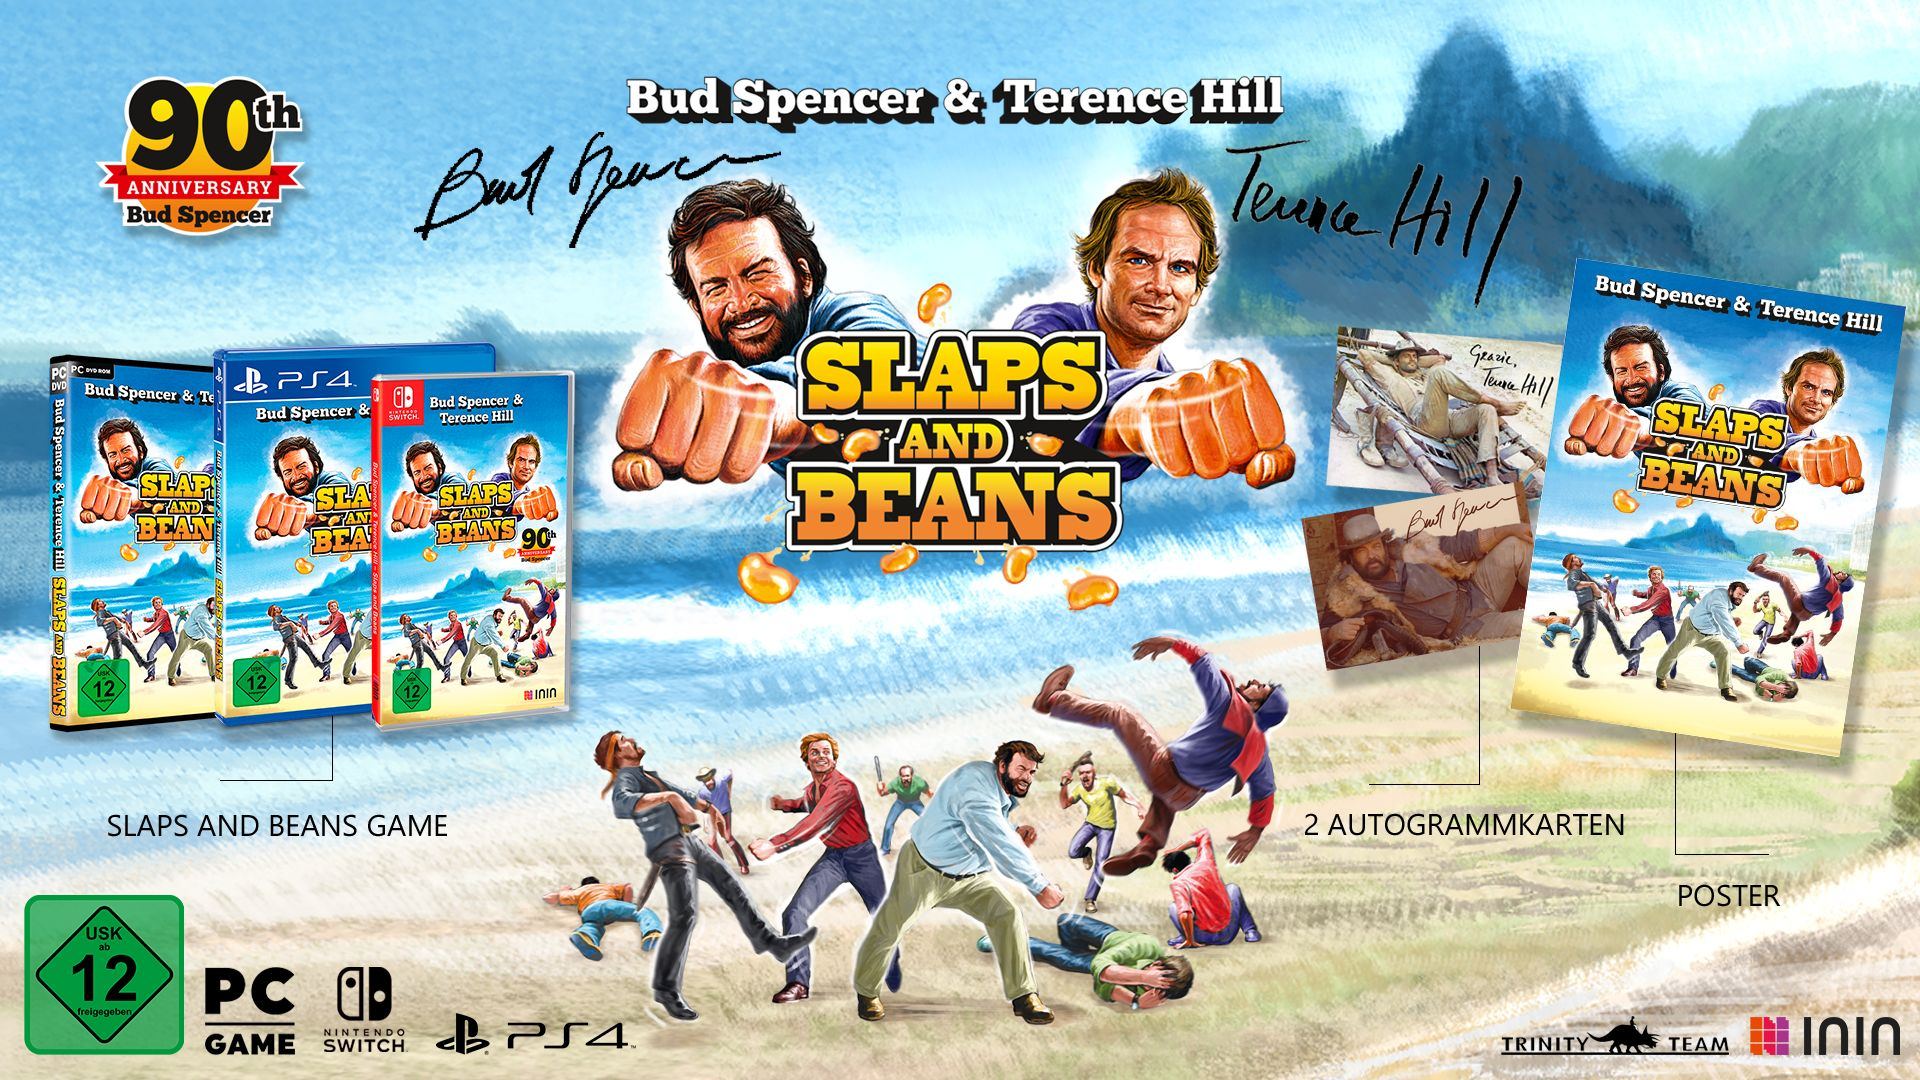 Bud Spencer & Terence Hill Slaps and Beans: Sammlerausgabe kommt in den  Handel - Anniversary Edition